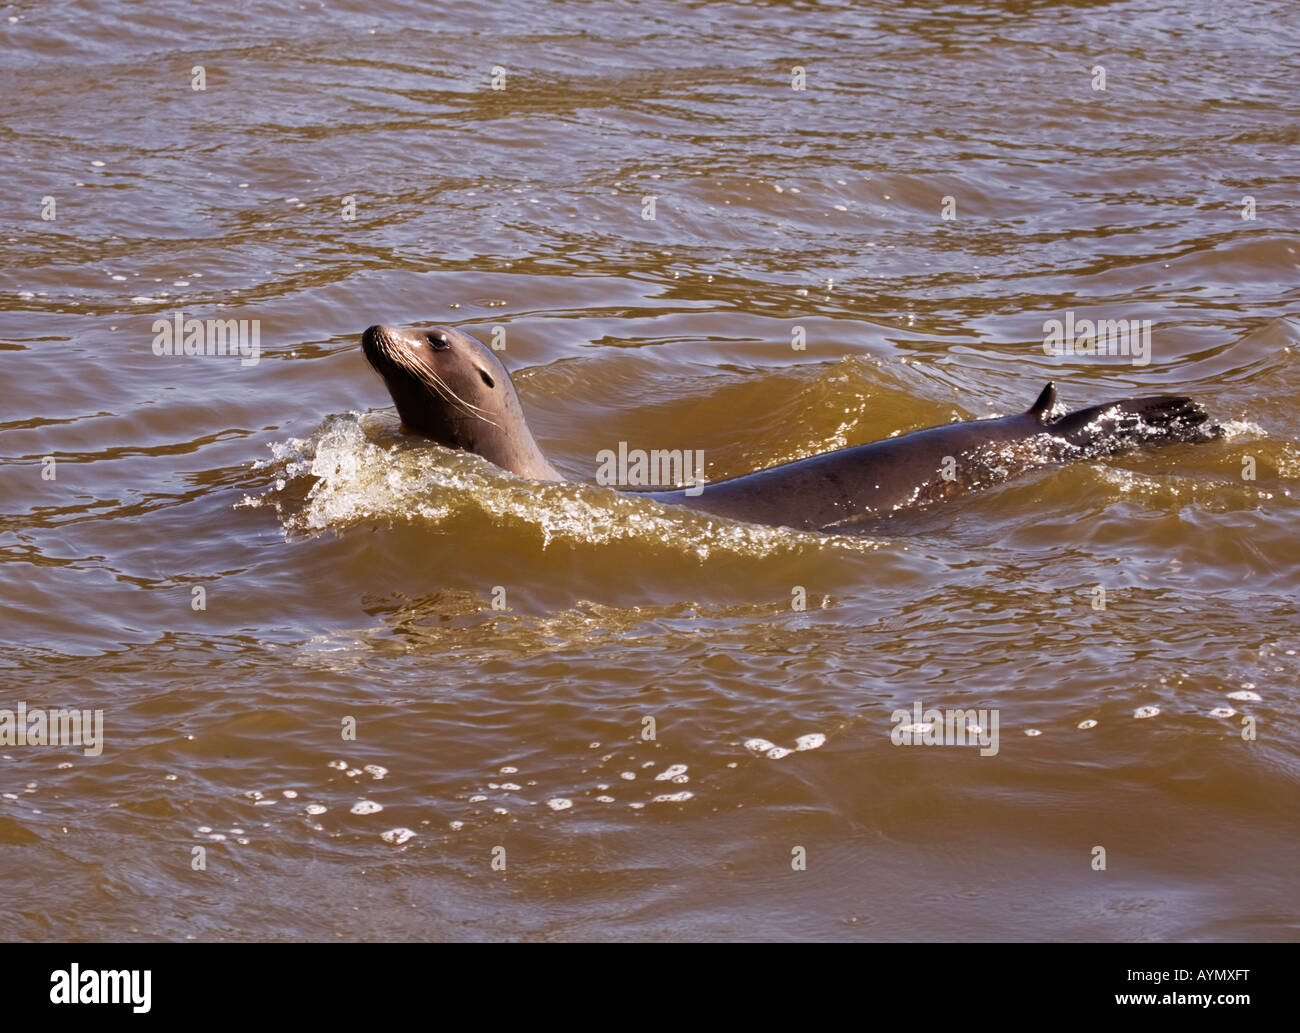 Sealion swimming  in lake water,England,UK Stock Photo